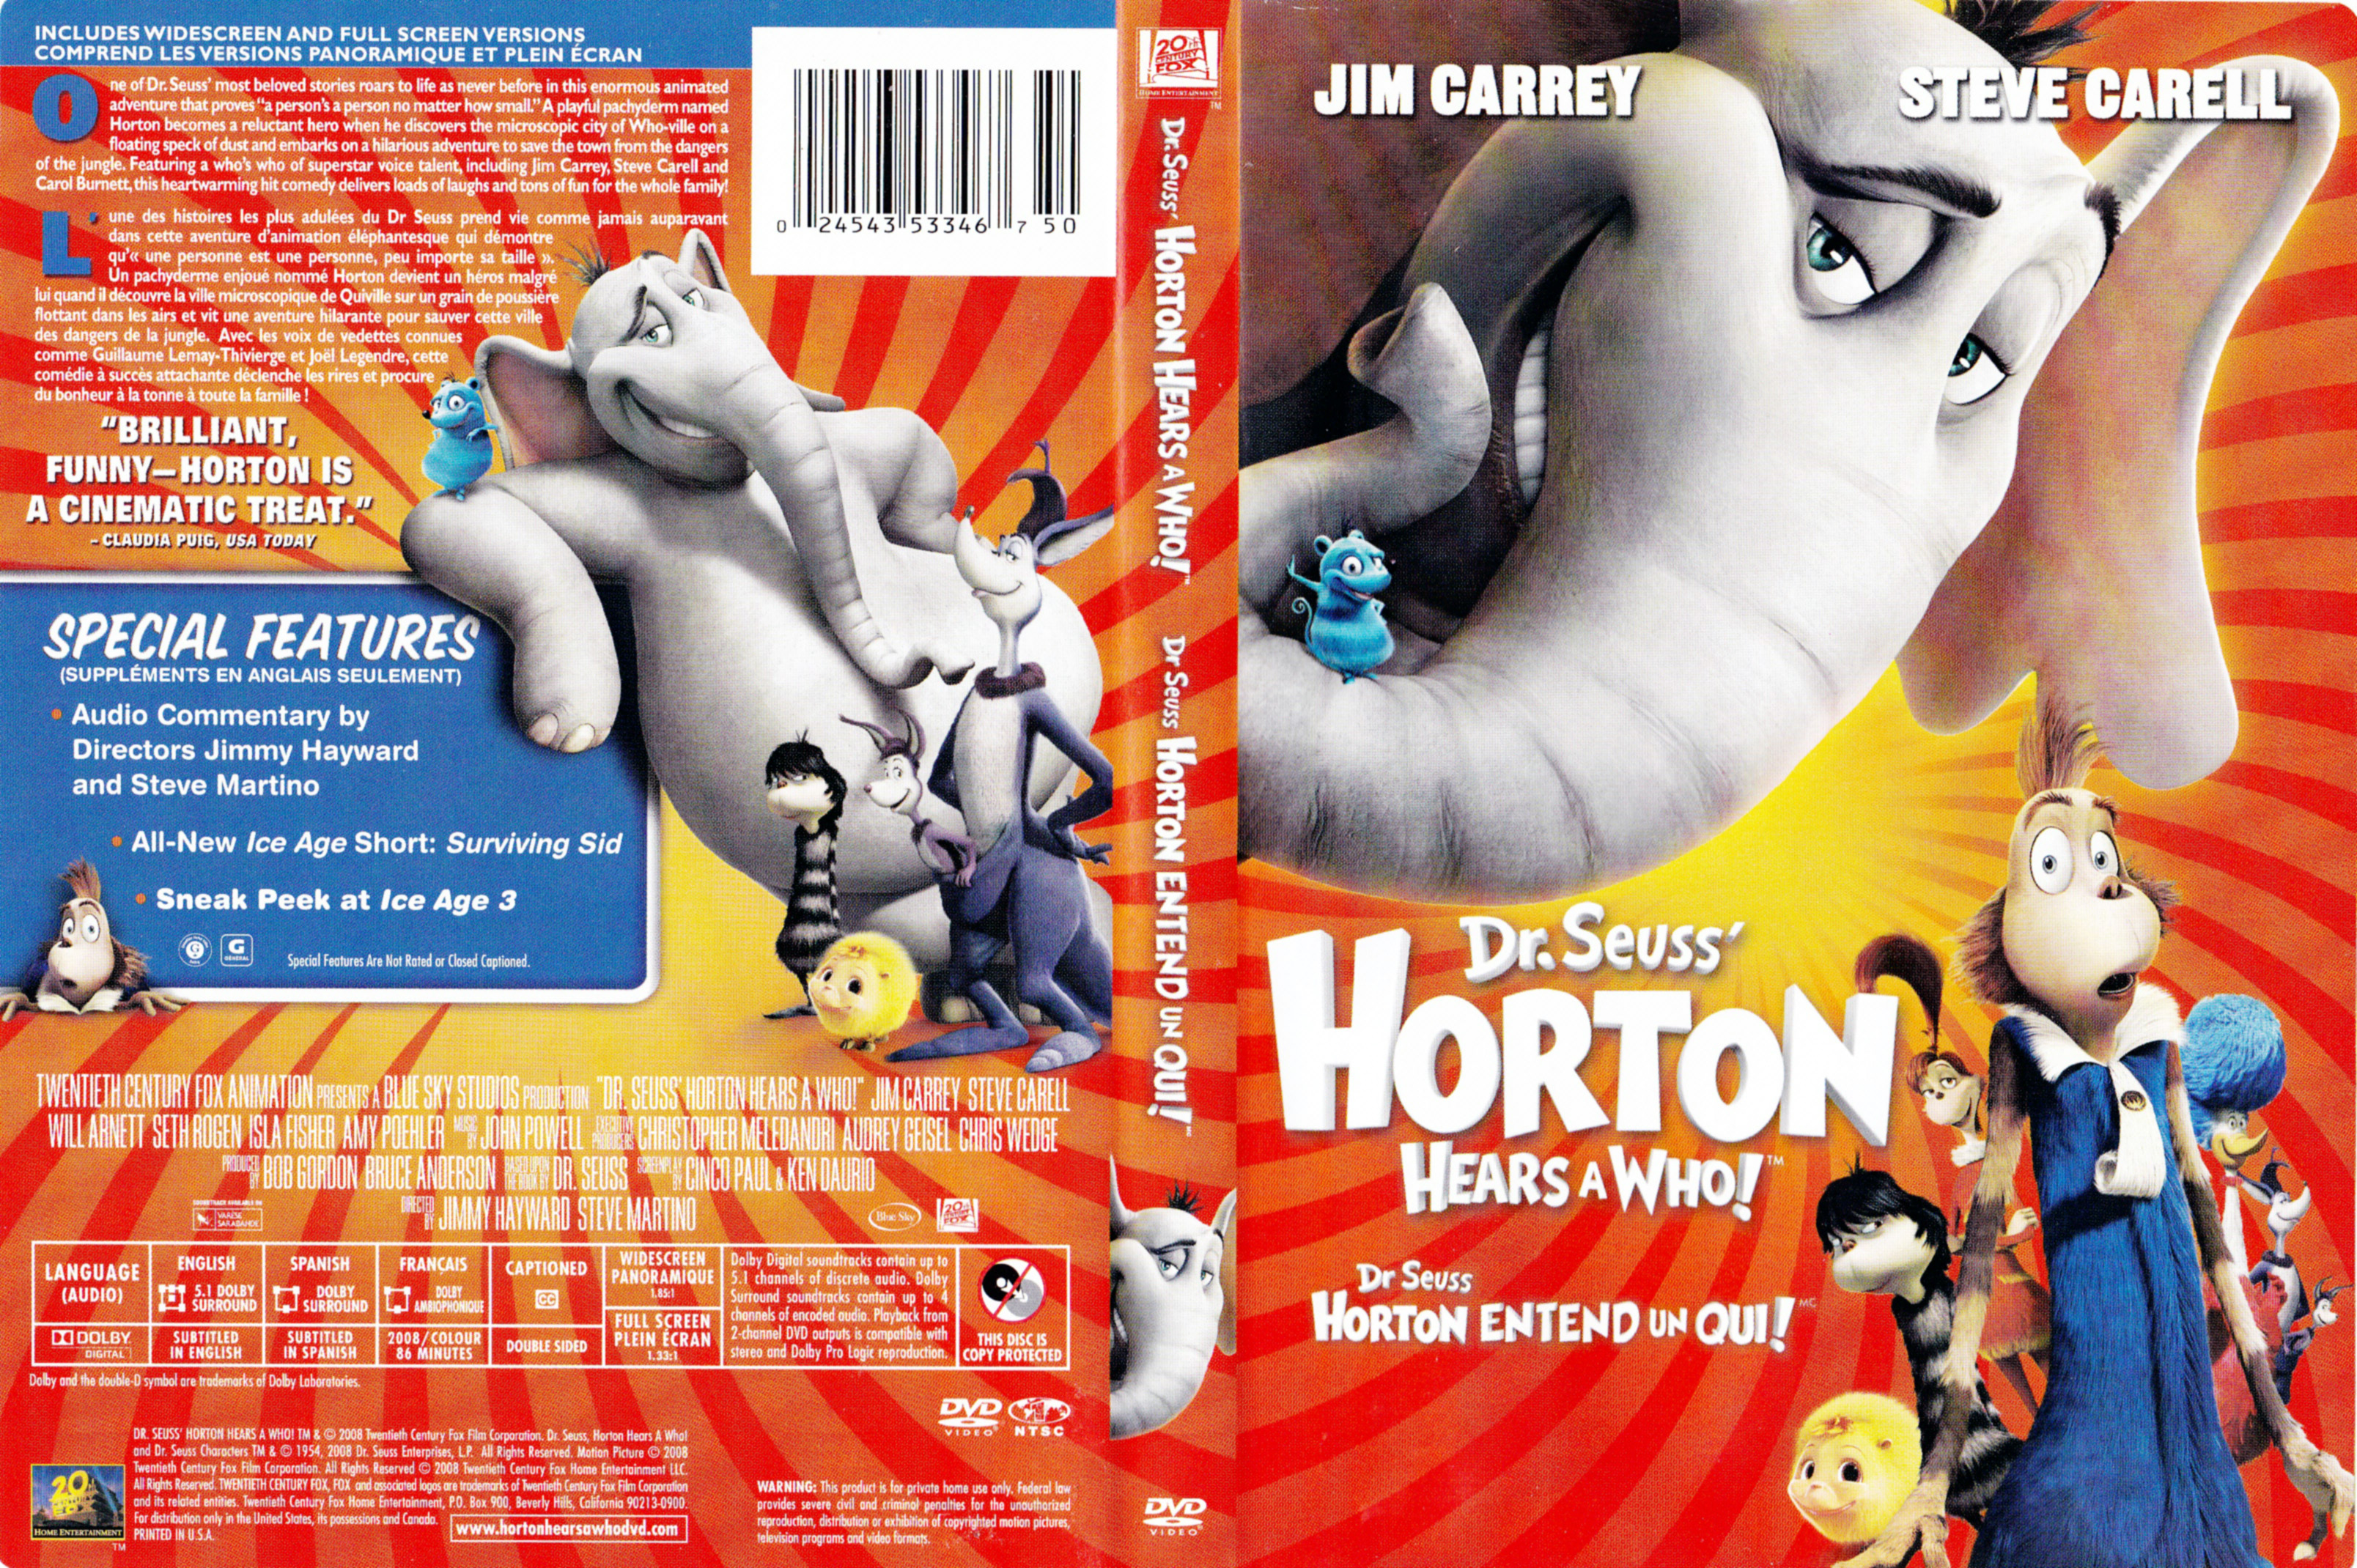 Jaquette DVD Horton (Canadienne)